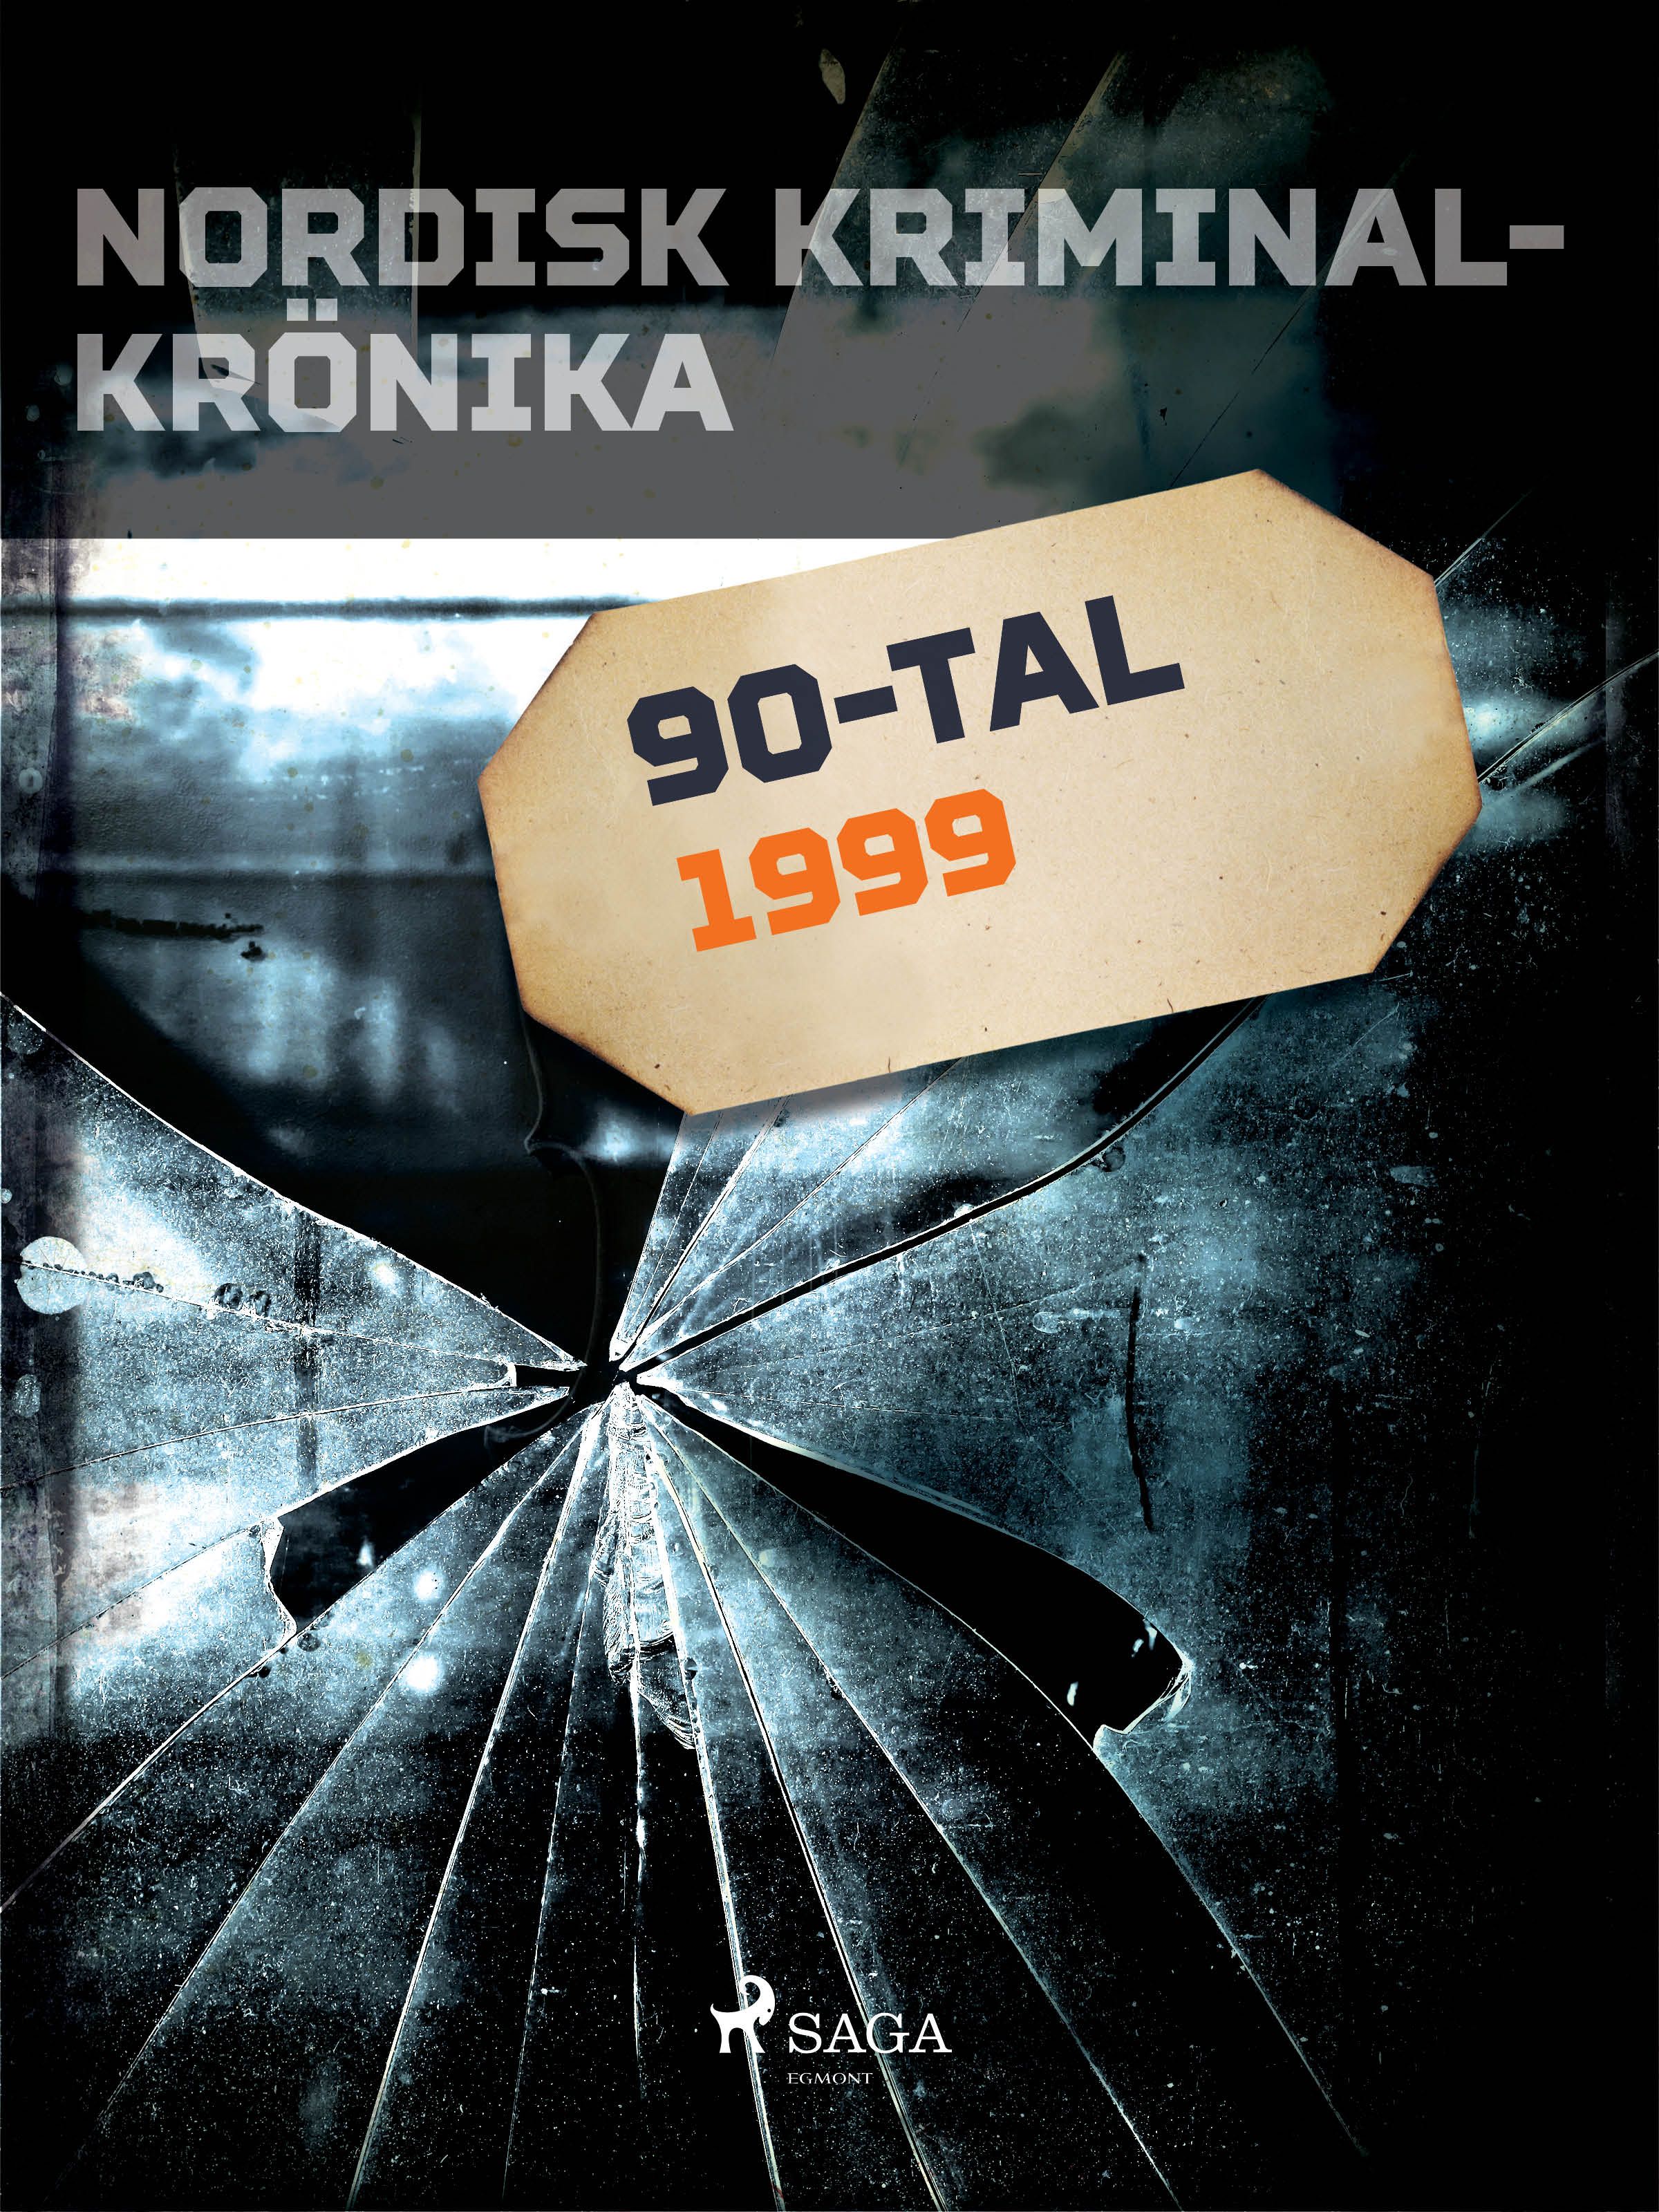 Nordisk kriminalkrönika 1999, e-bog af Diverse